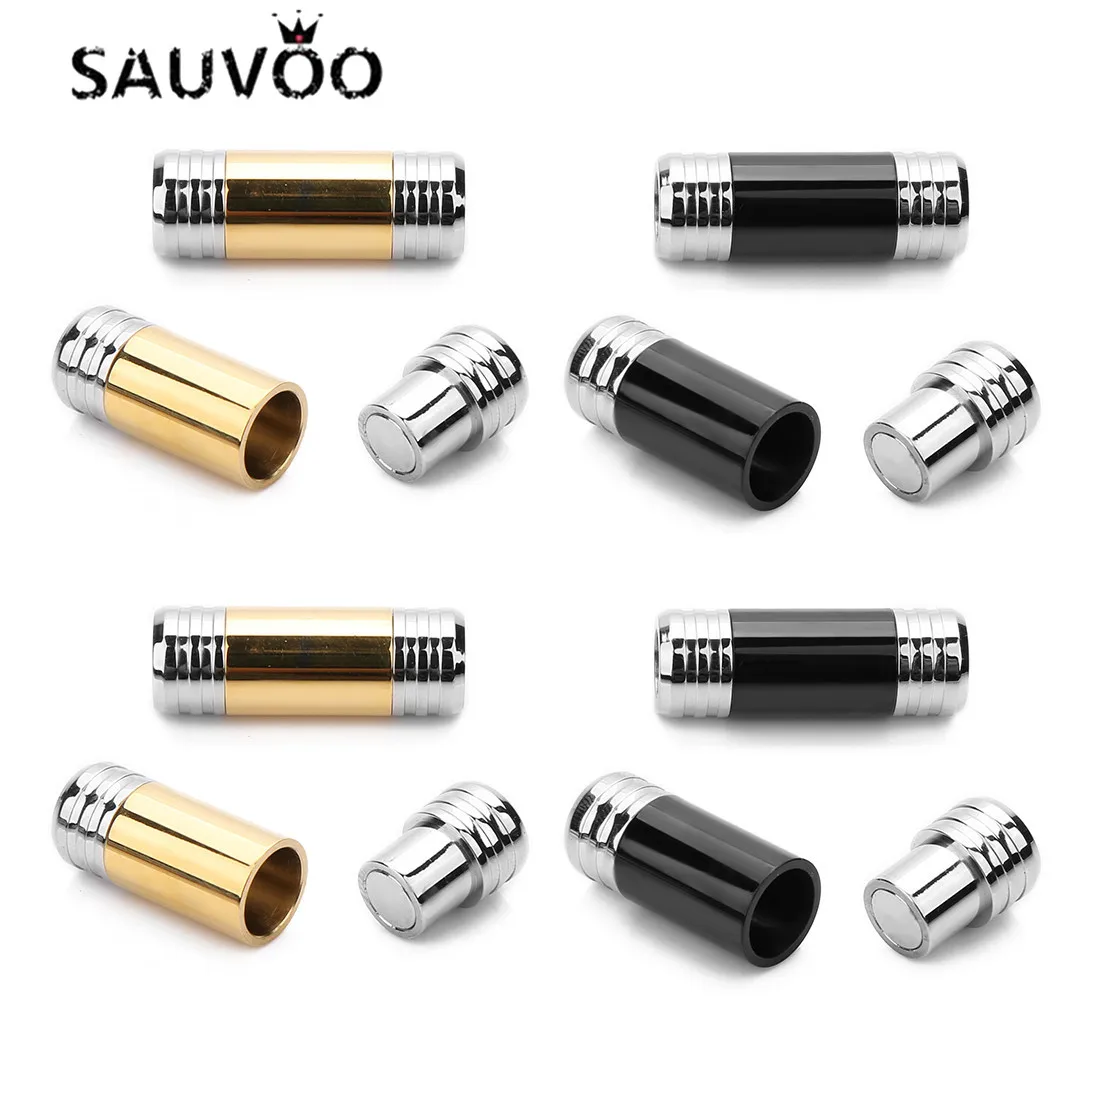 

Магнитный соединитель SAUVOO 2 шт./лот из нержавеющей стали, двухцветный, золотистый, черный, внутренний диаметр 6 мм, фурнитура для изготовлени...